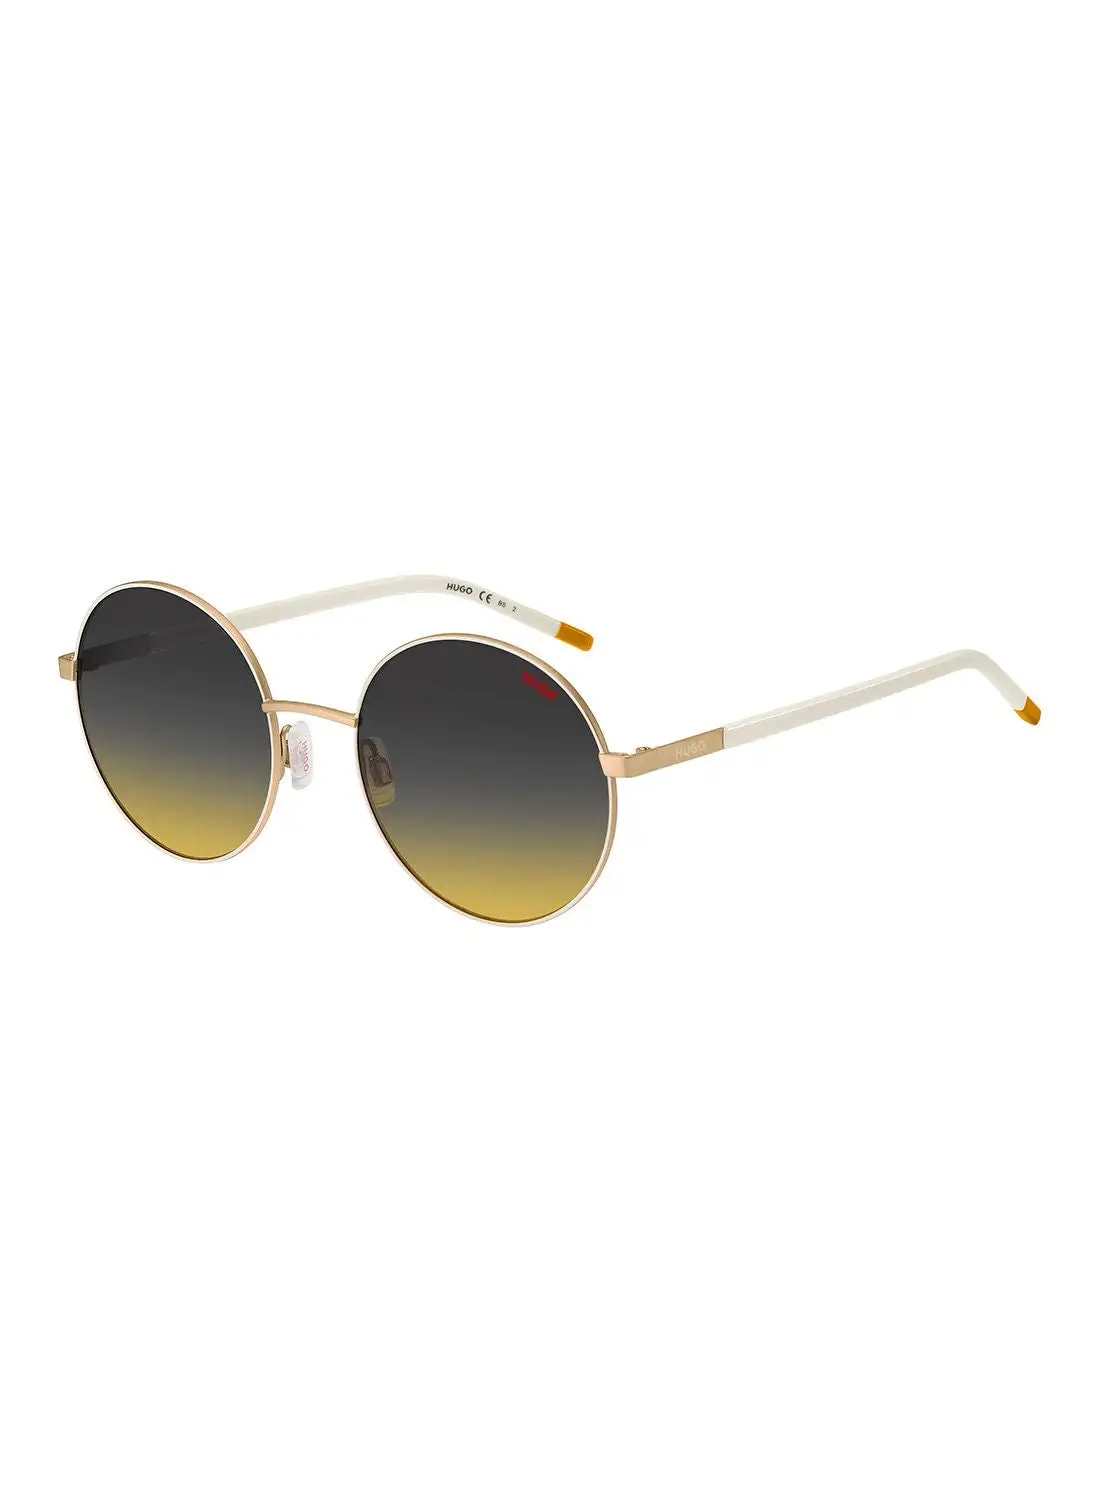 HUGO BOSS Women's UV Protection Round Sunglasses - Hg 1237/S Whit Gold 55 - Lens Size: 55 Mm